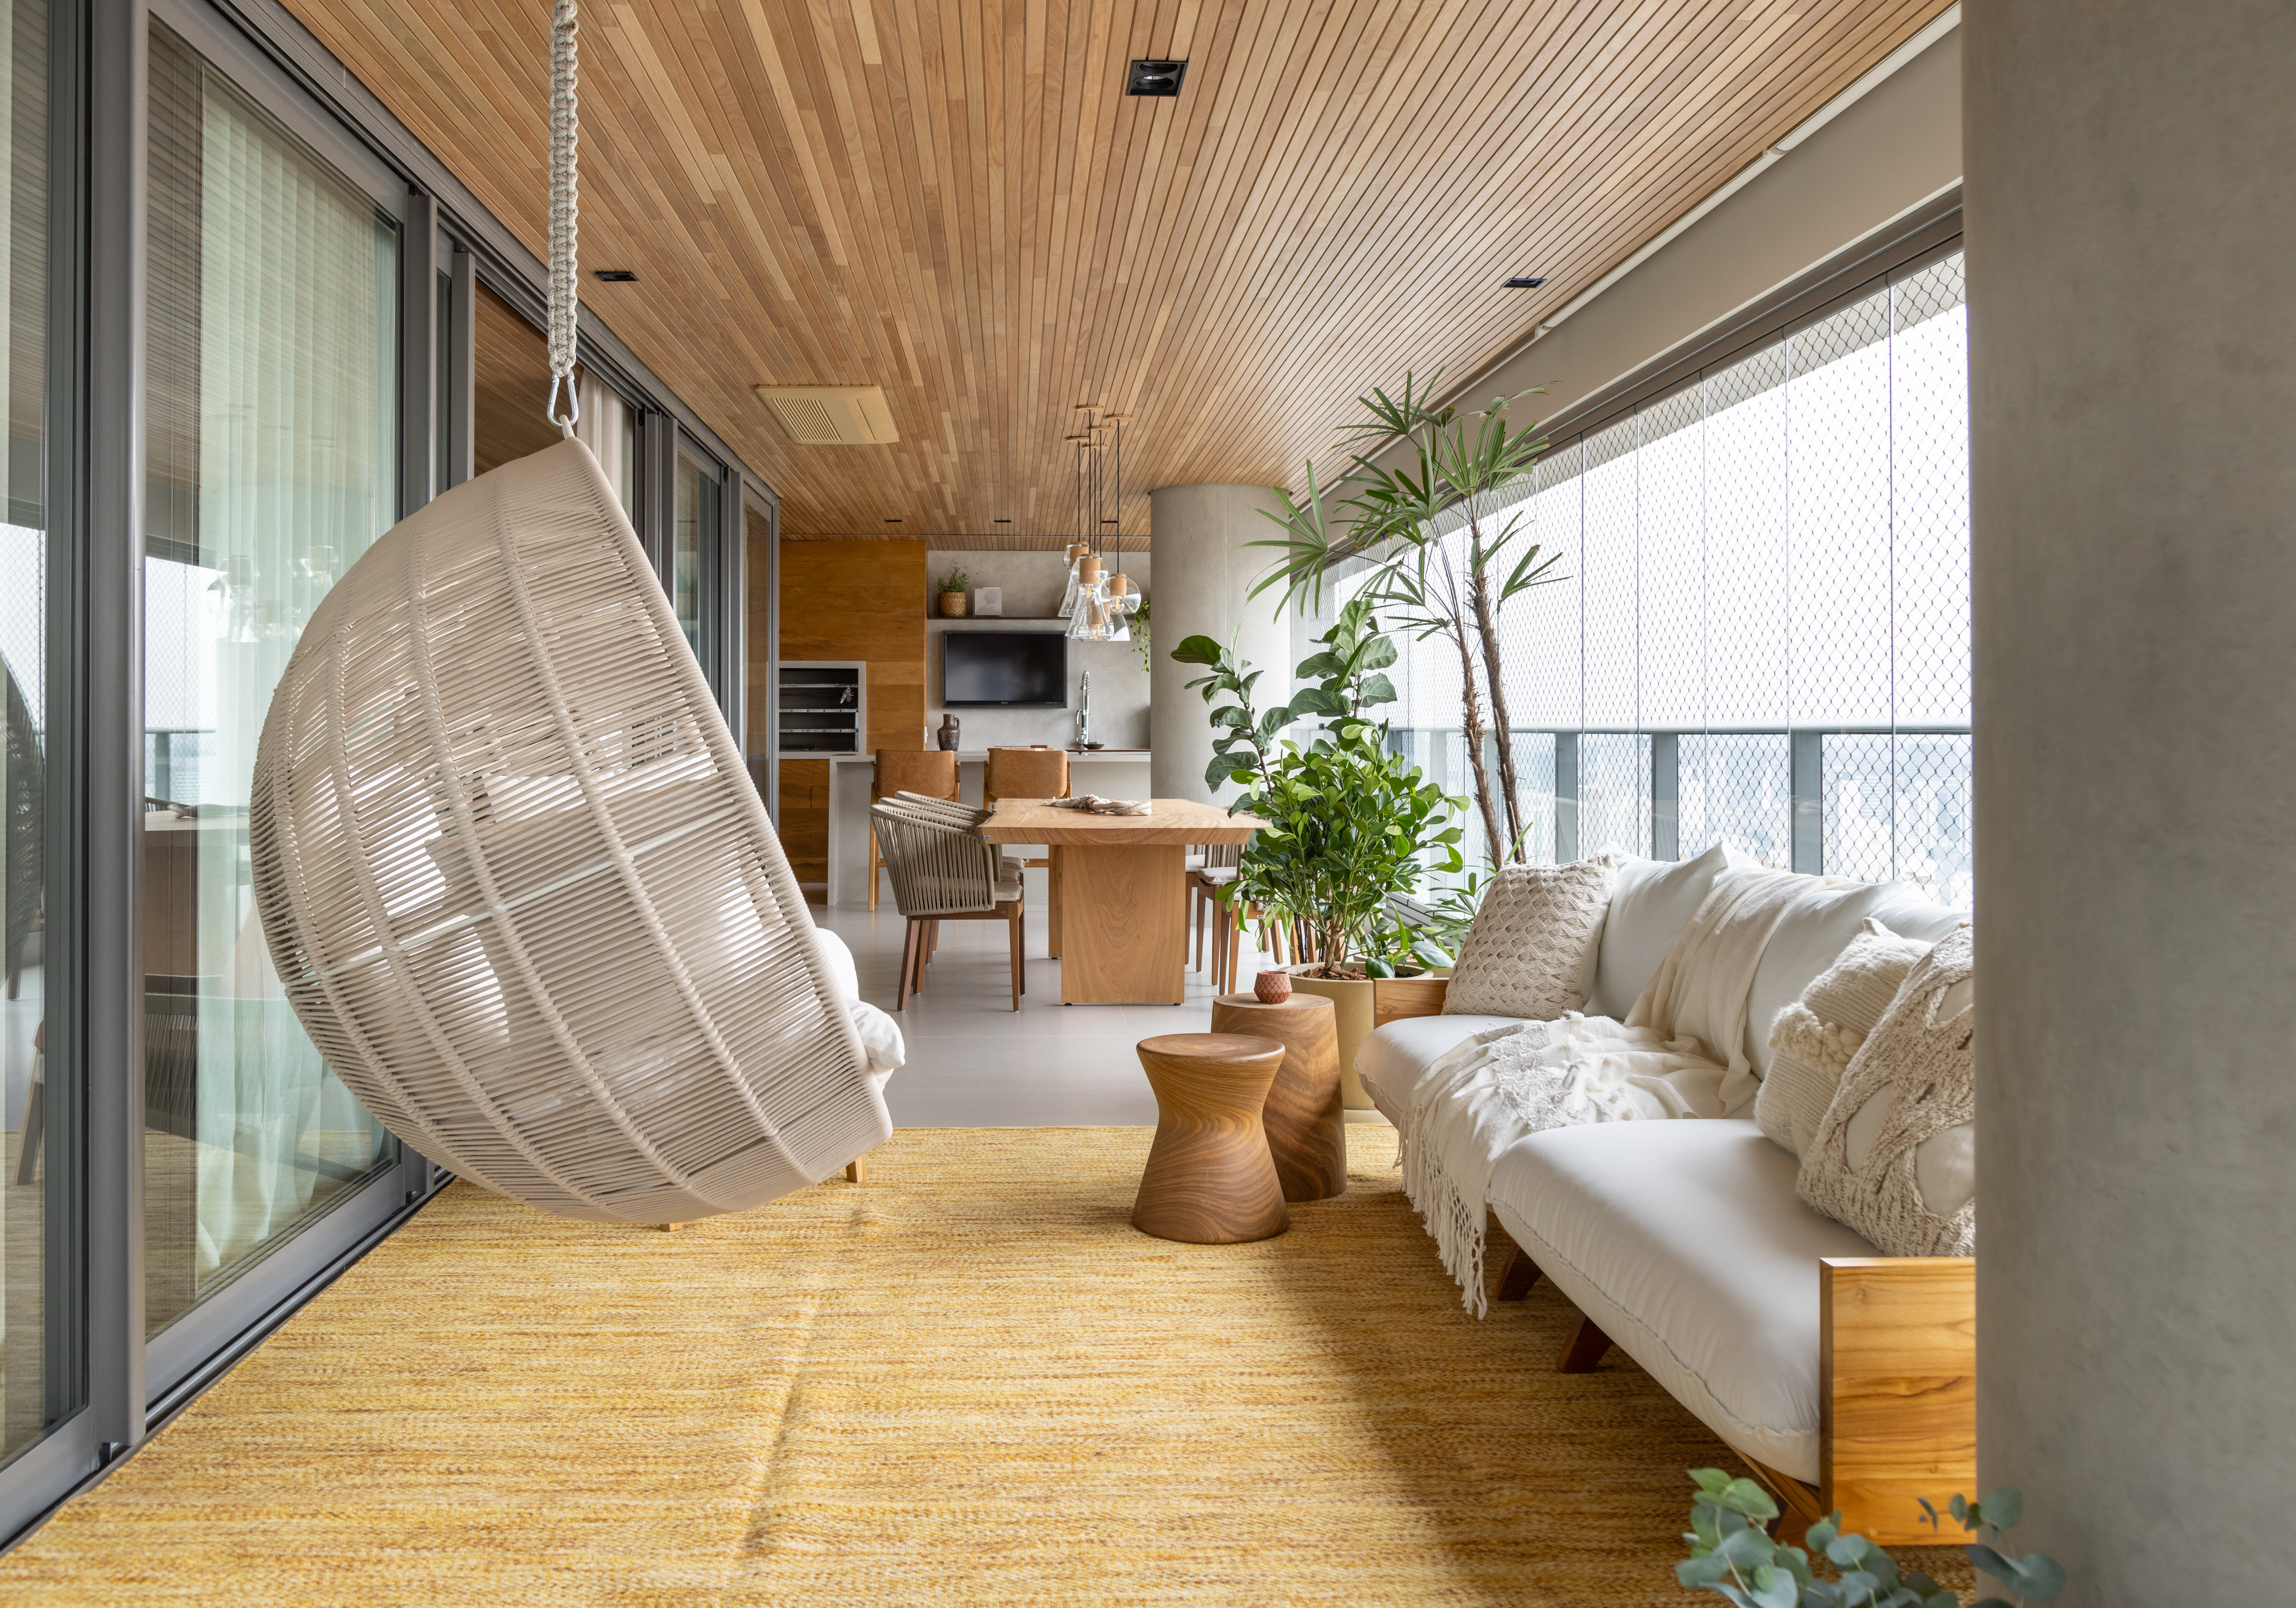 Apê 275 m2 décor rústico toques cinza SImone Si Saccab decoracao varanda gourmet mesa cadeira poltrona suspensa